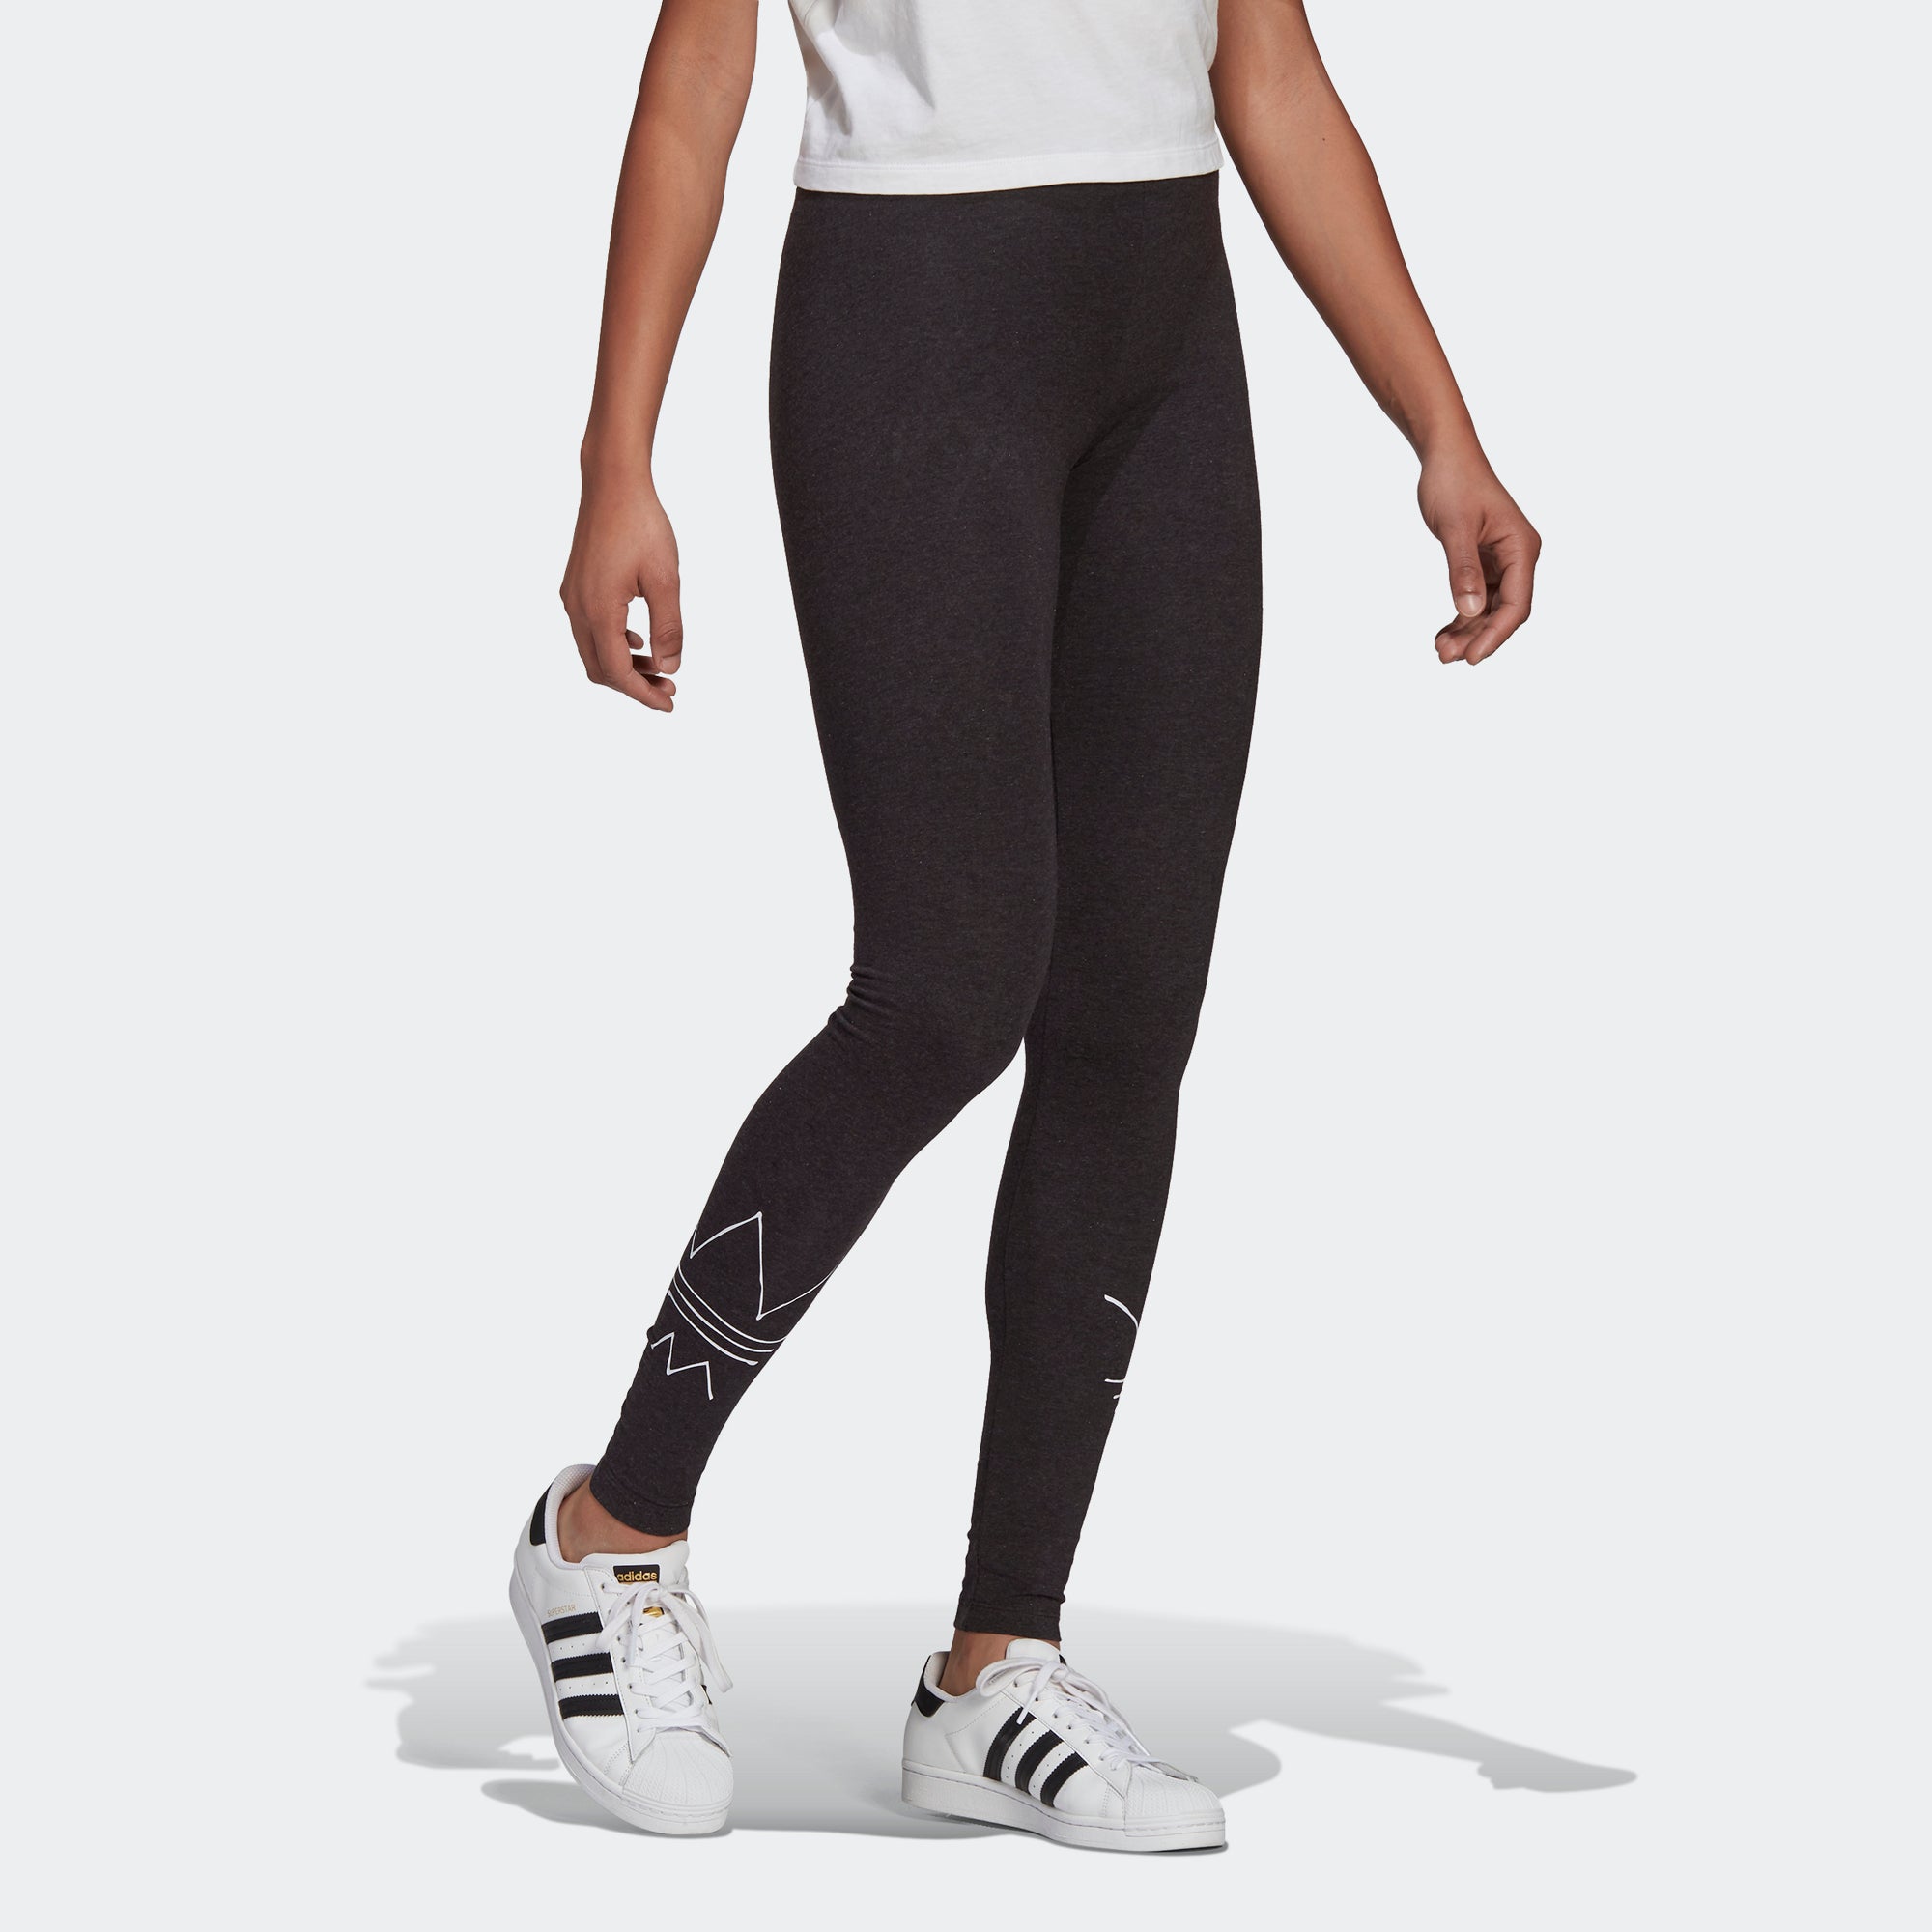 Are Adidas leggings considered see-through? - Quora